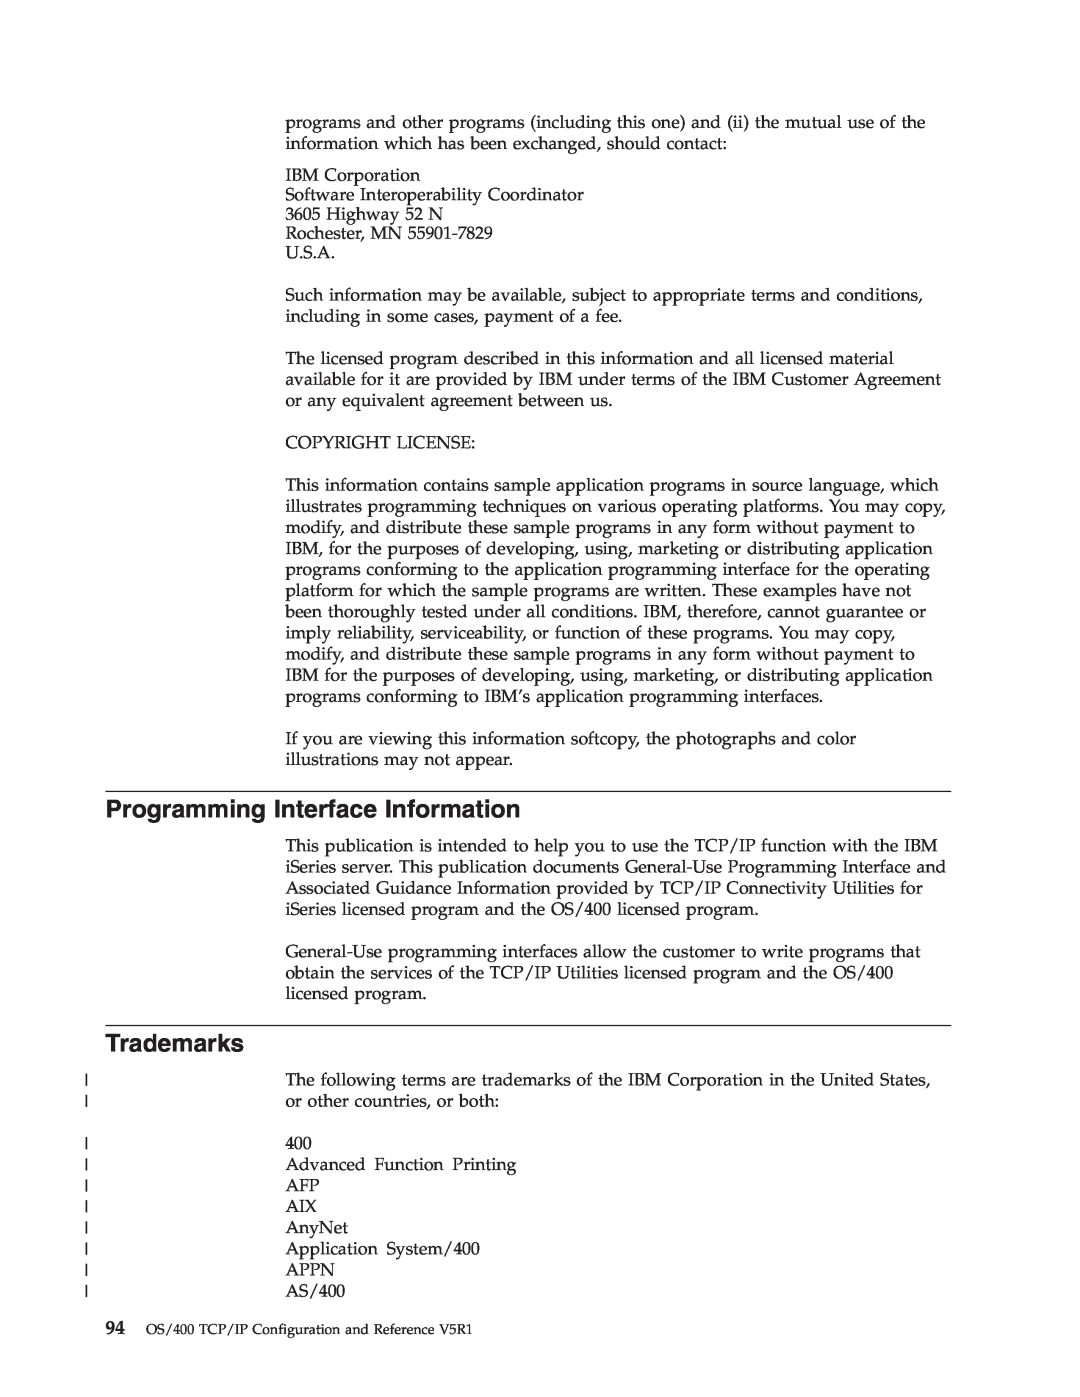 IBM SC41-5420-04 manual Programming Interface Information, Trademarks 